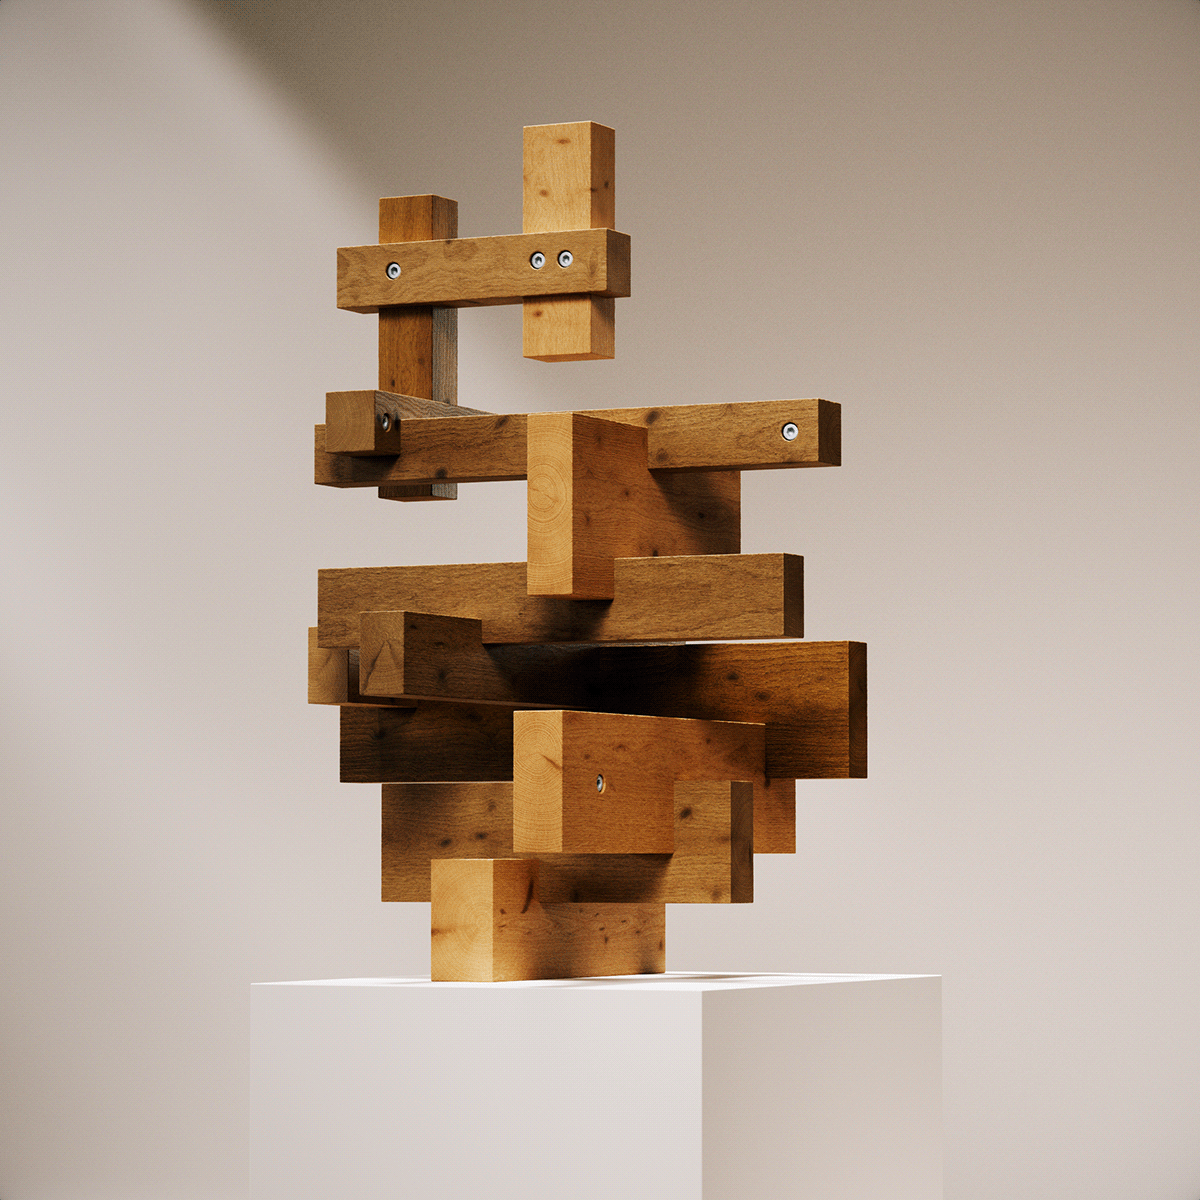 generative sculpture wood 3D art Render